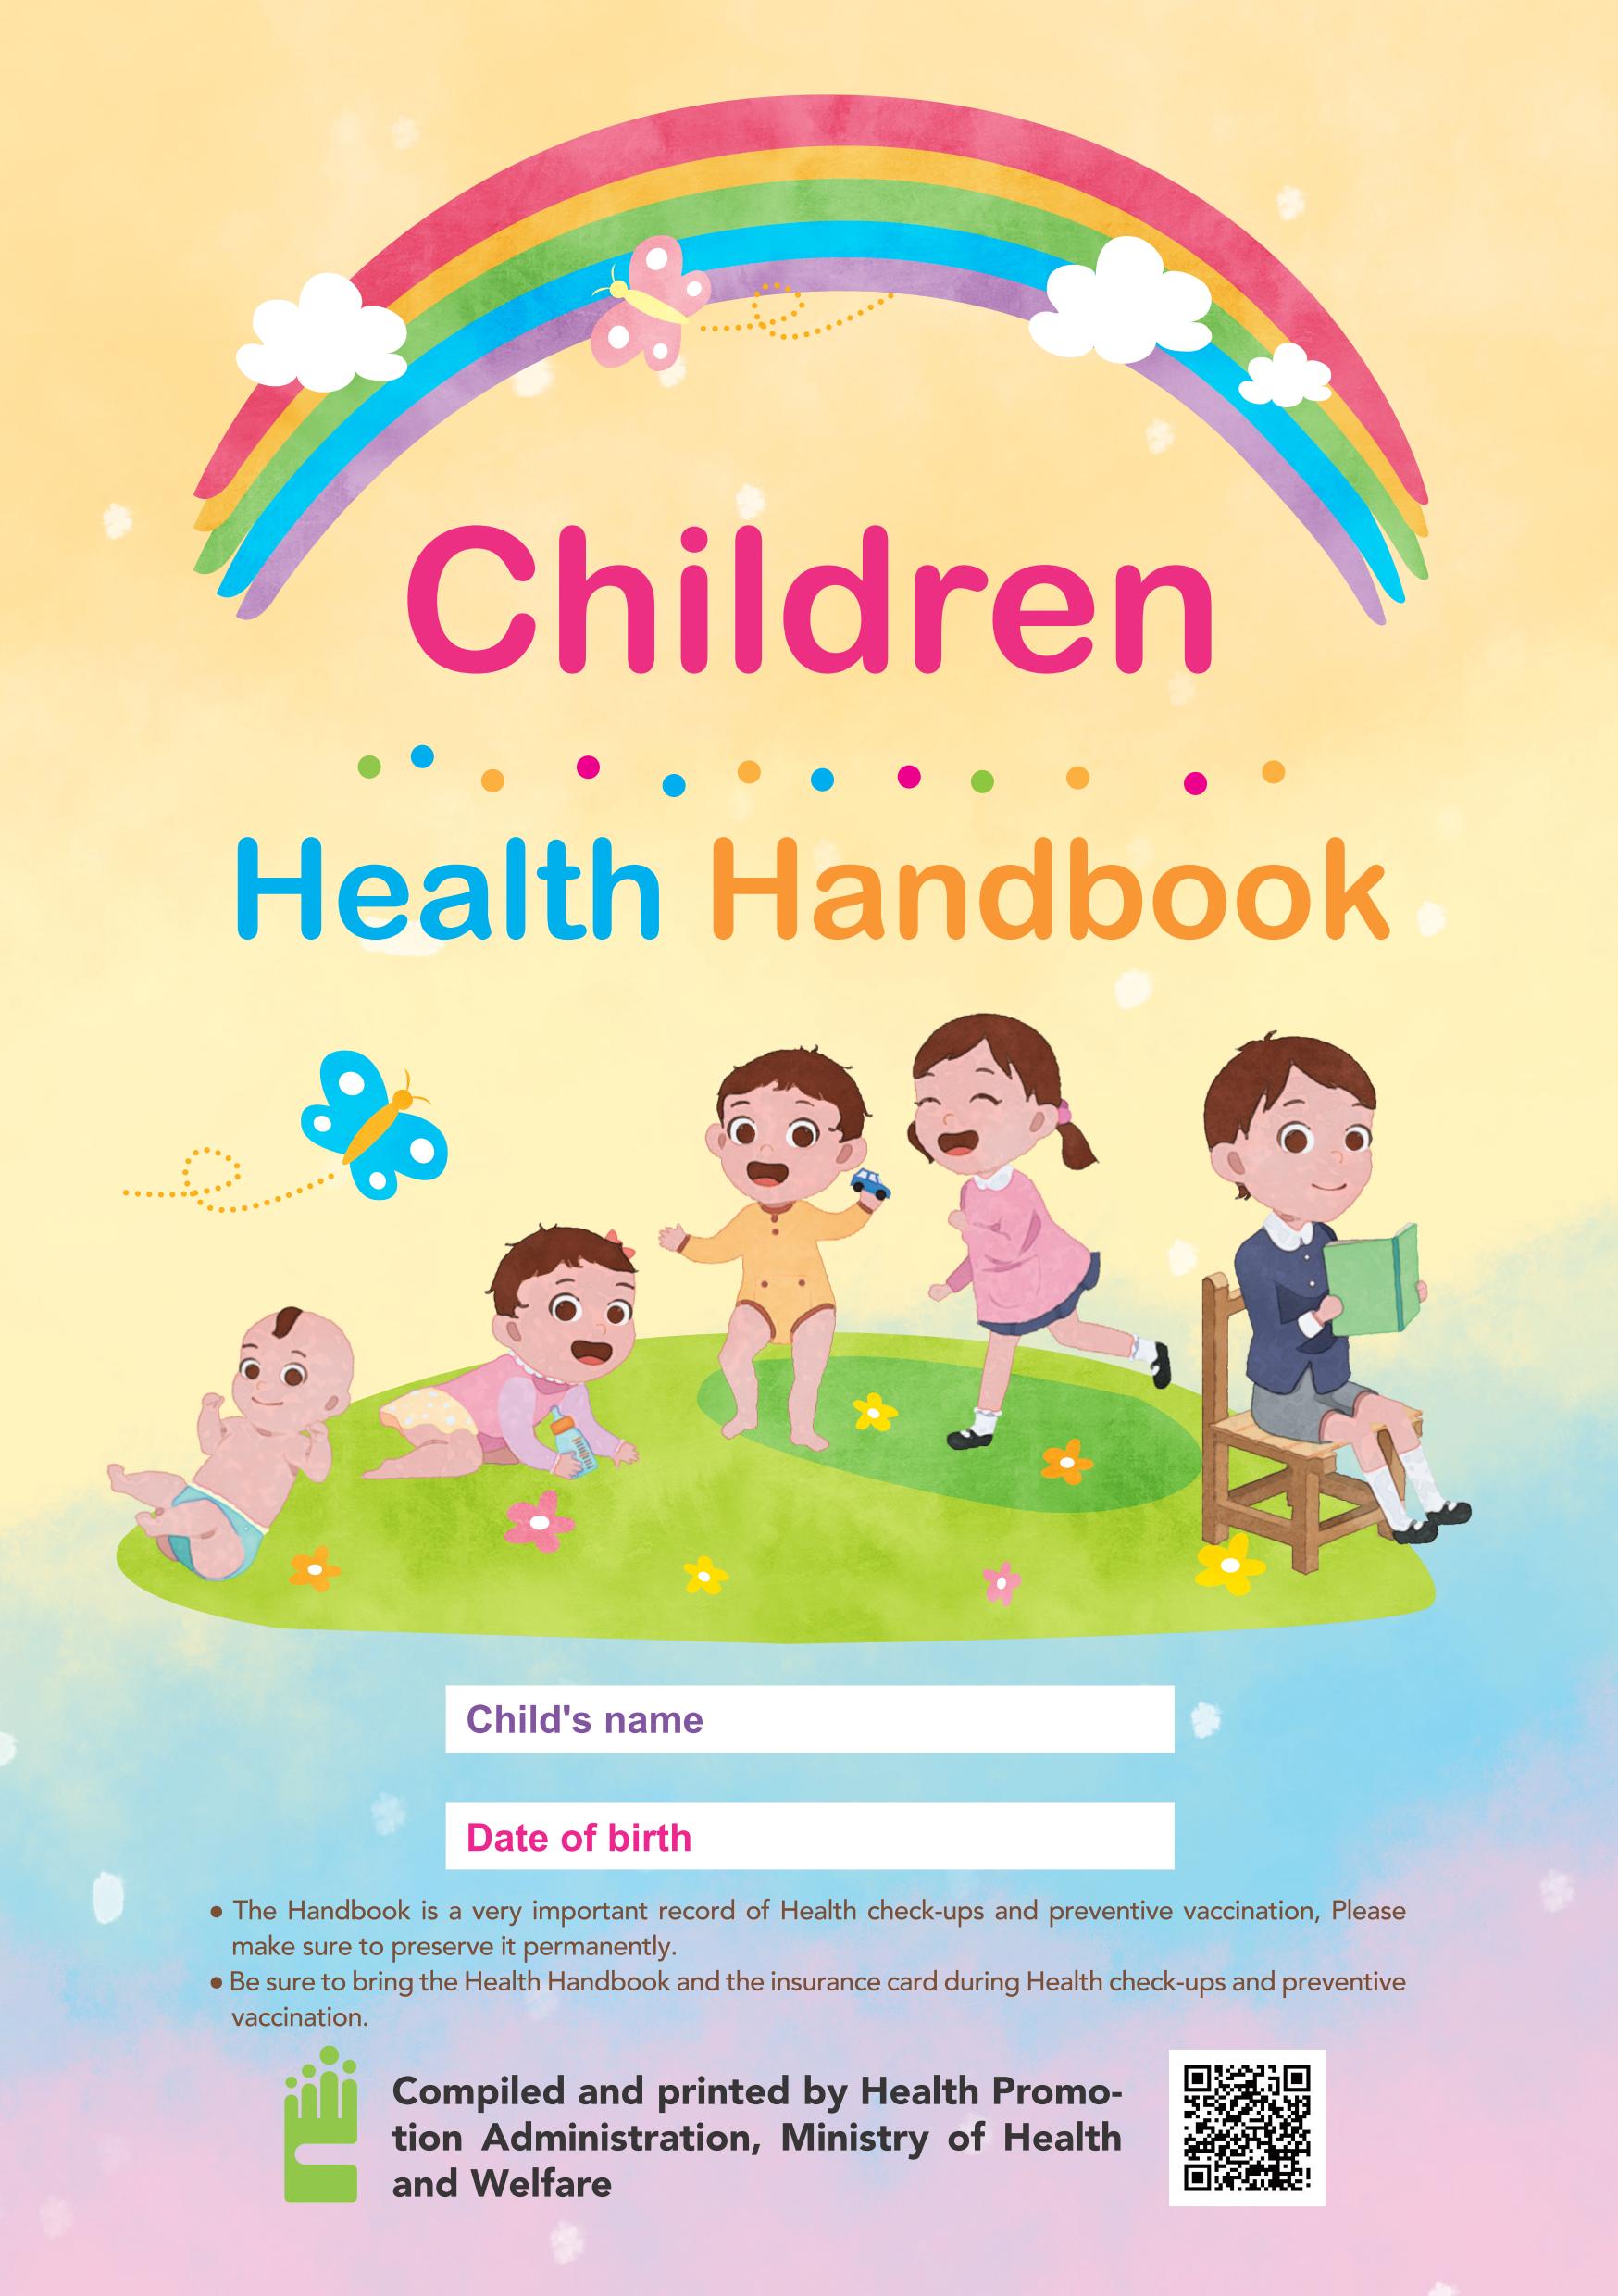 兒童健康手冊(英文版) Children Health Handbook文章照片